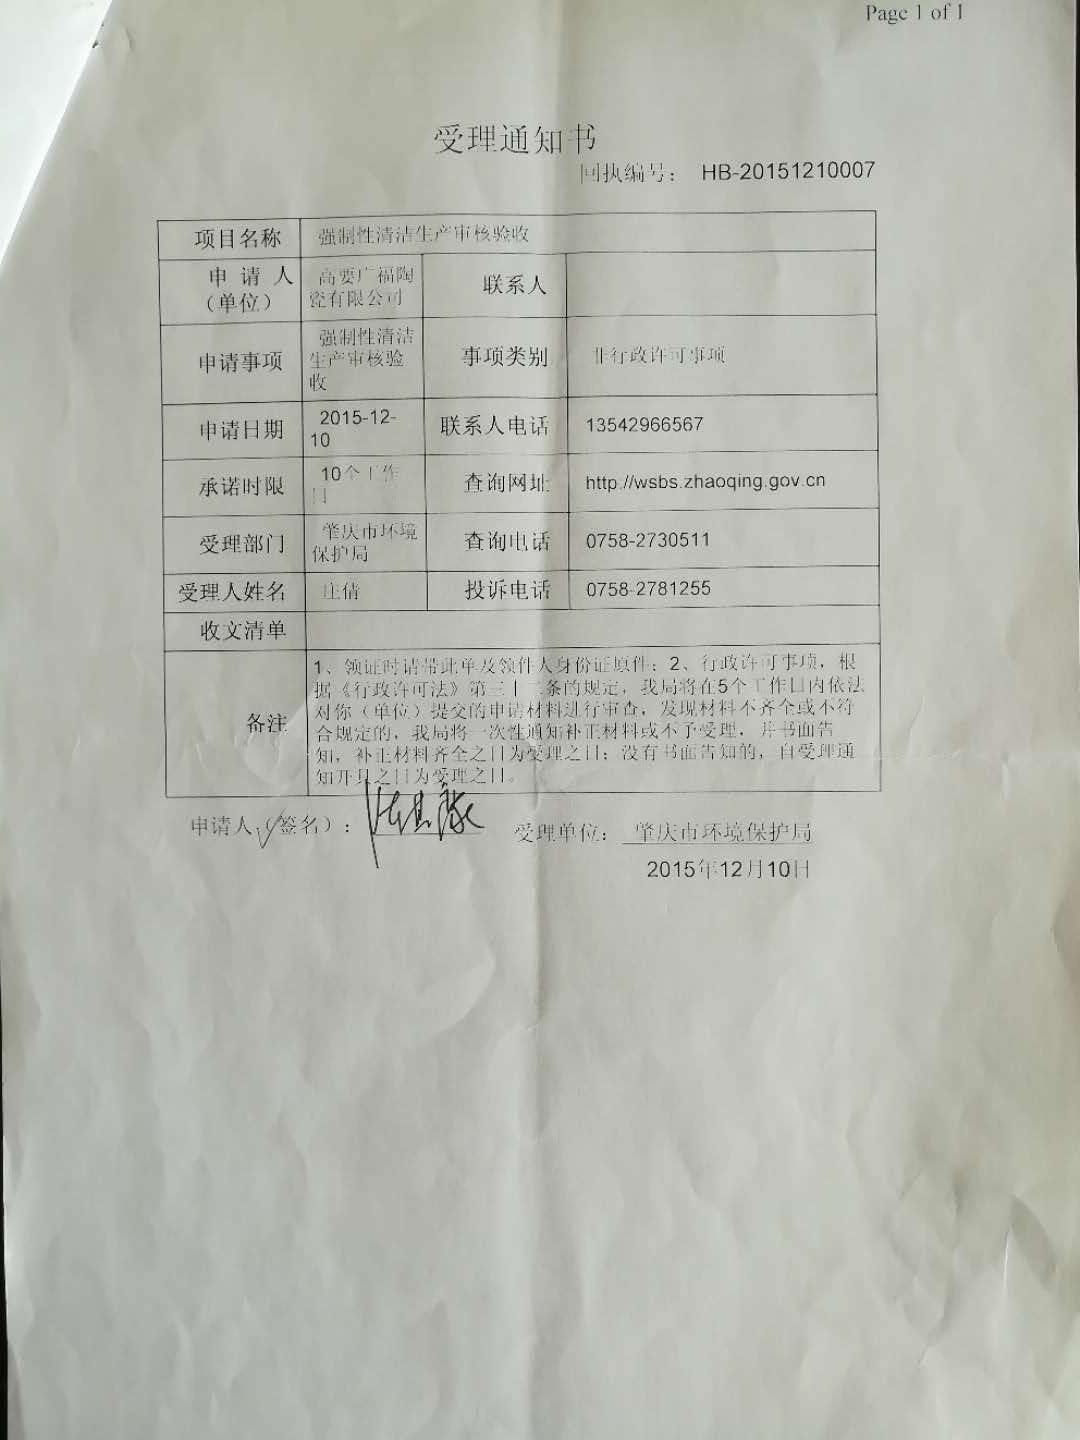 肇慶市壞境保護局行政許可(2)